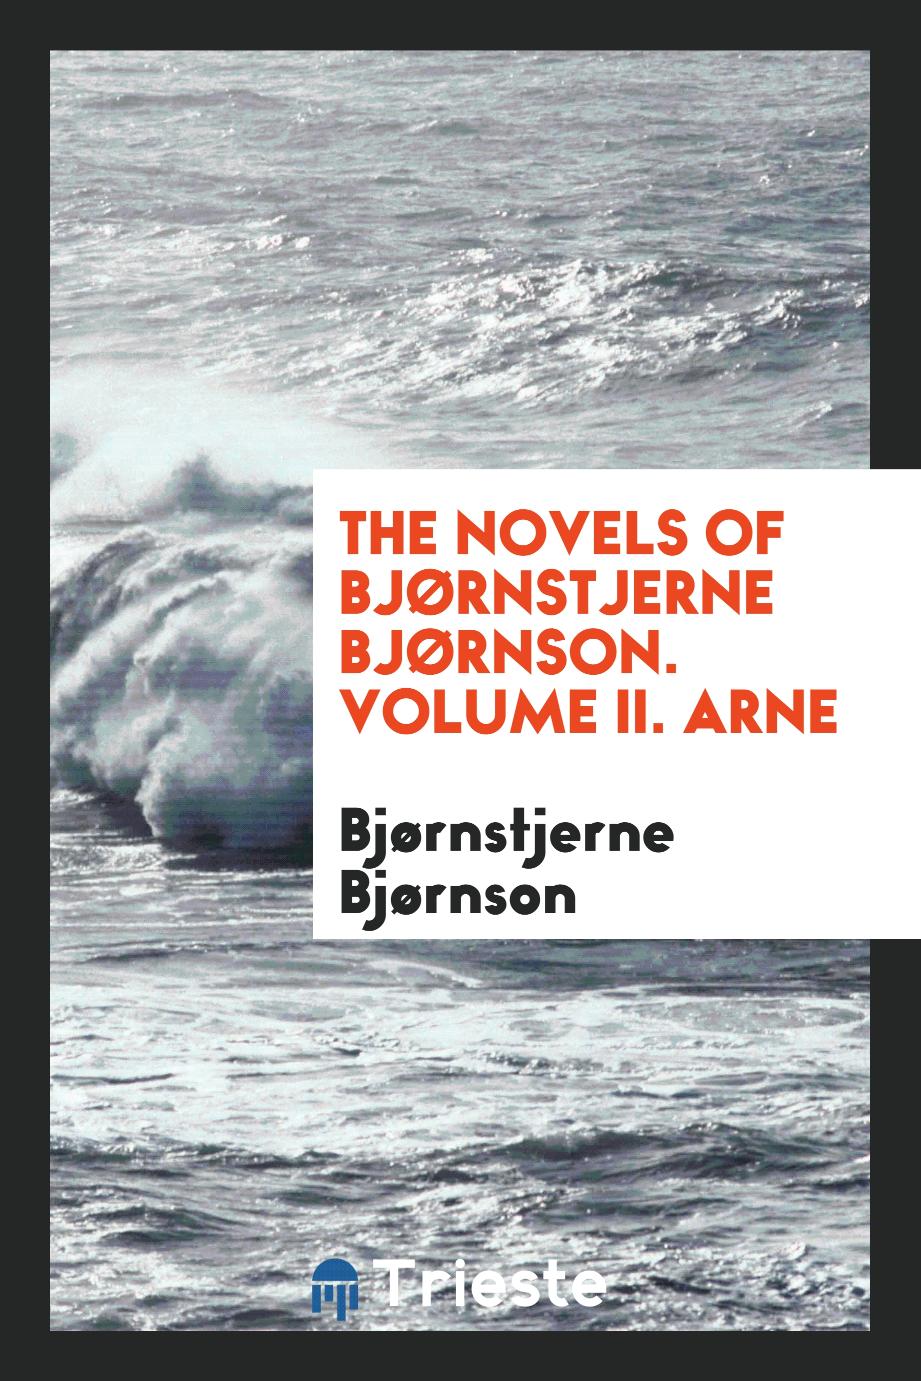 The Novels of Bjørnstjerne Bjørnson. Volume II. Arne